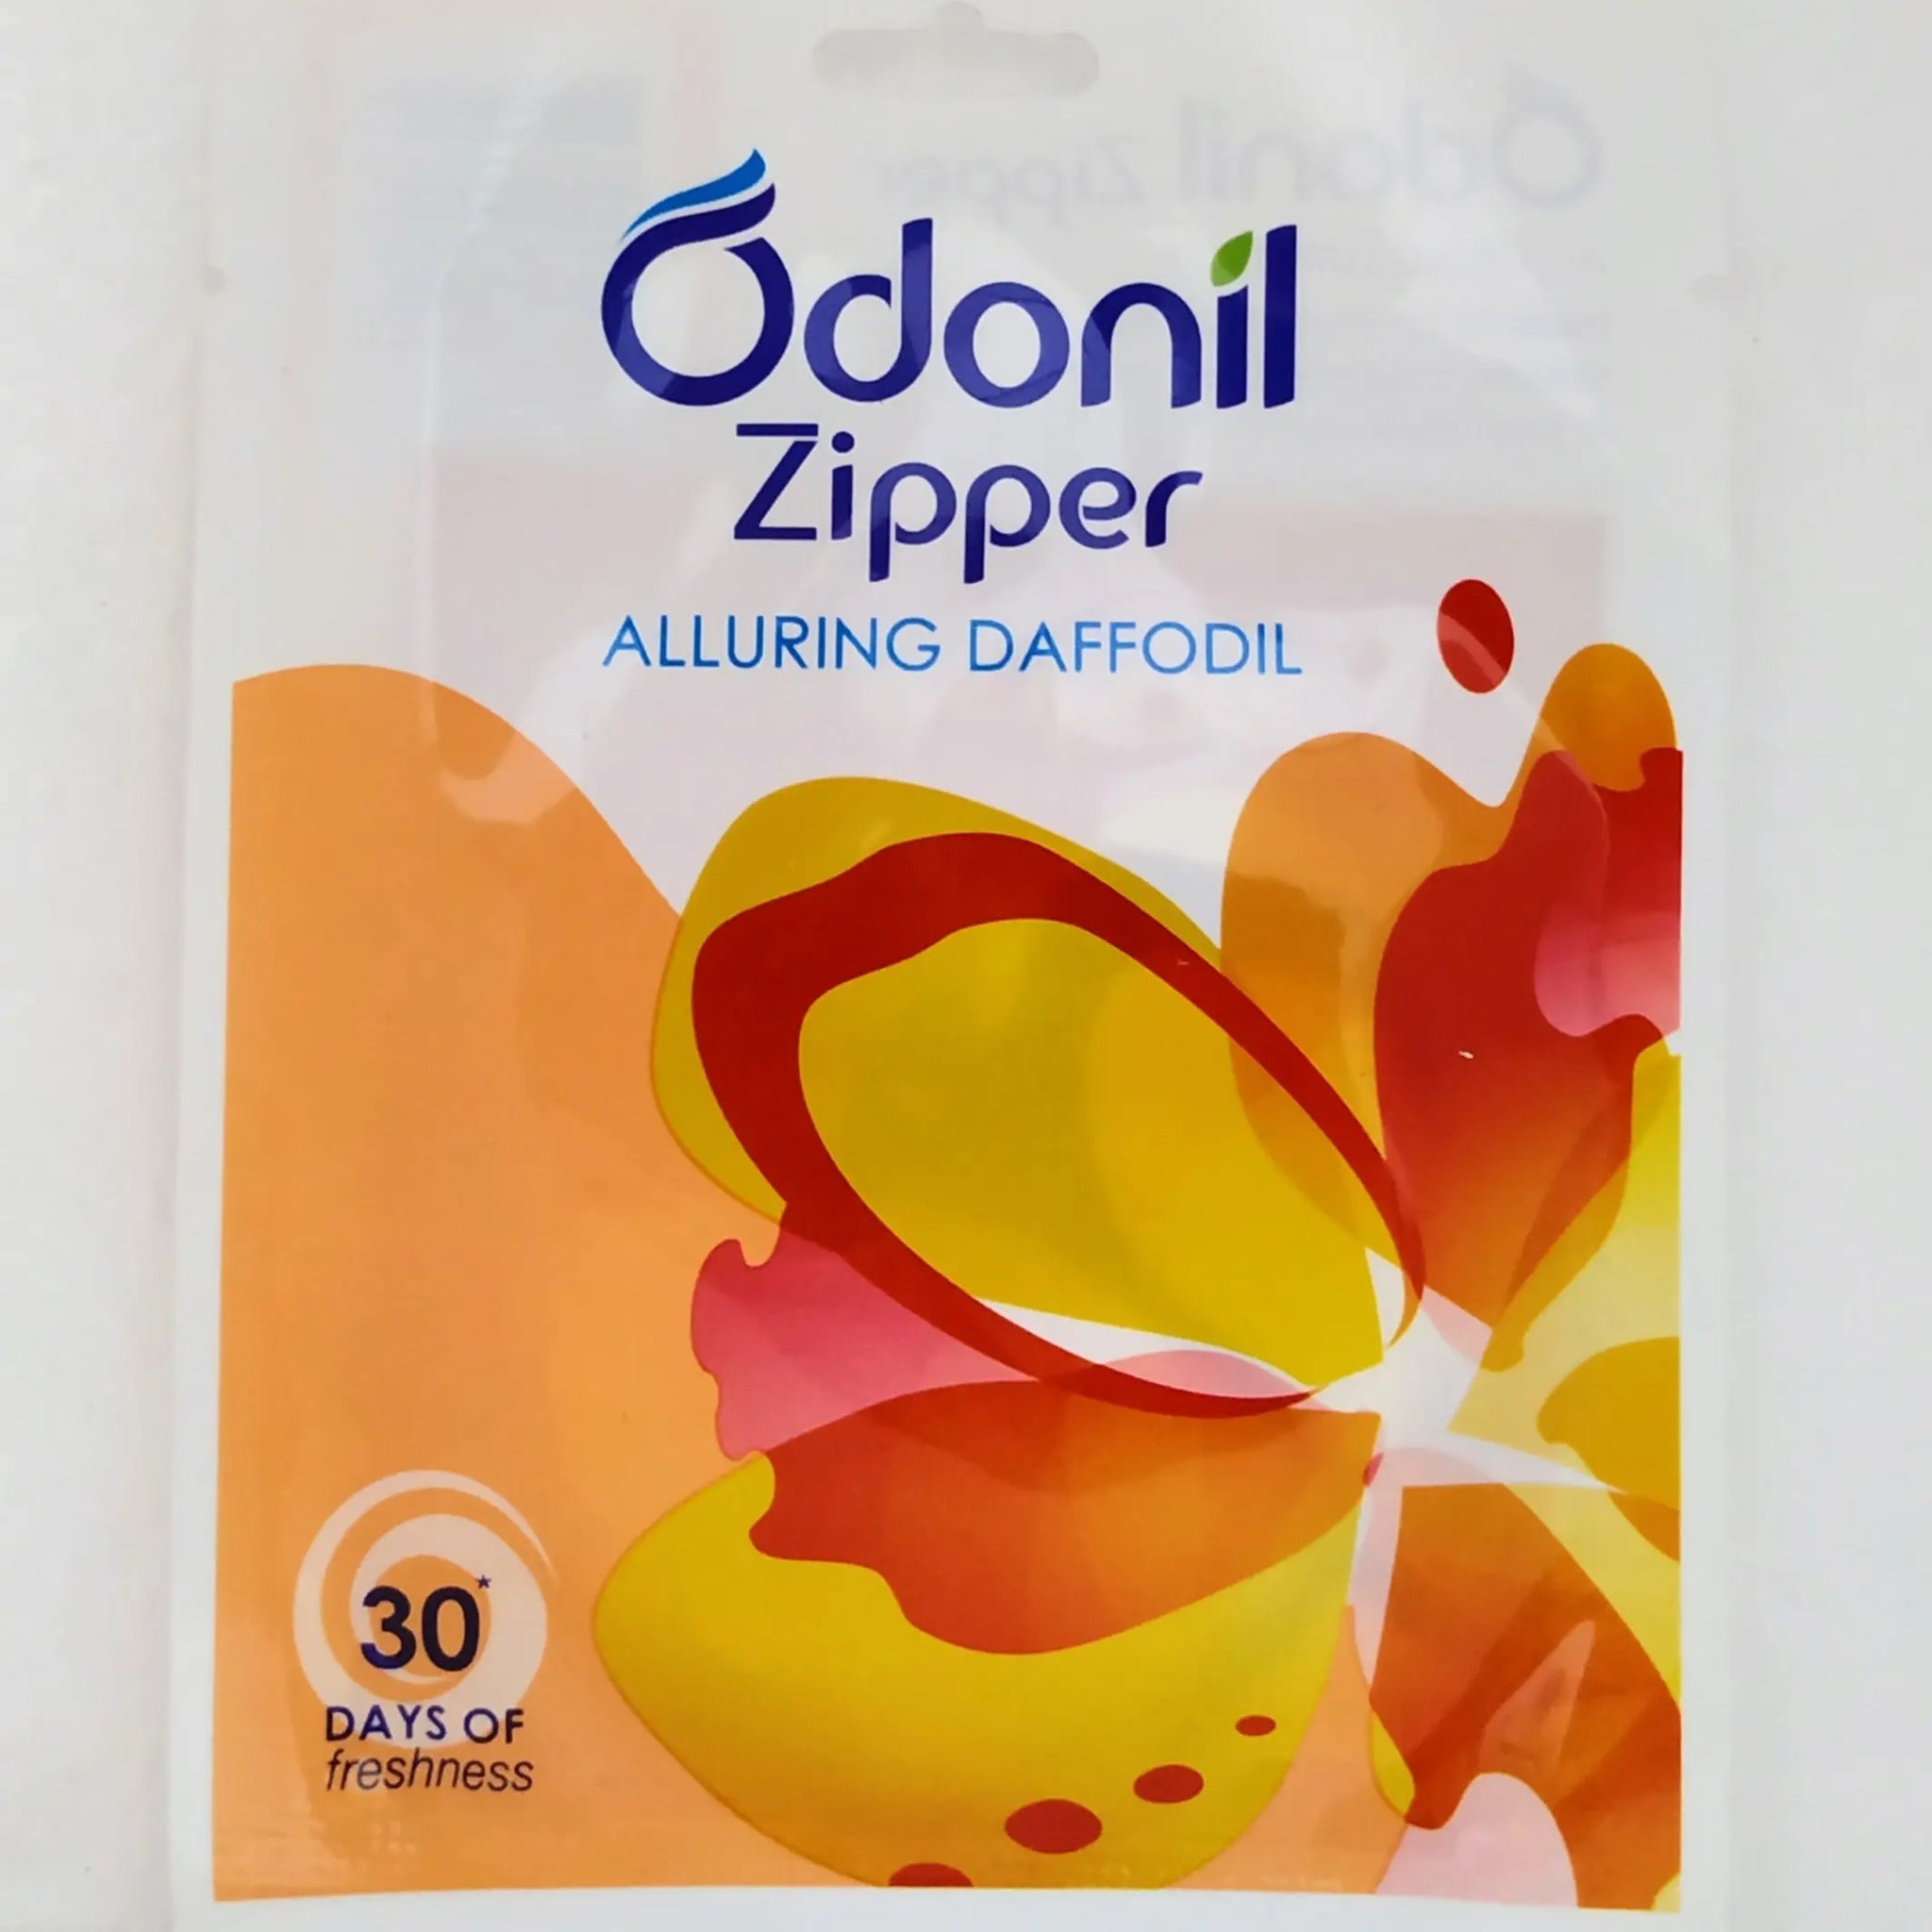 Odonil zipper - Alluring daffodil Dabur